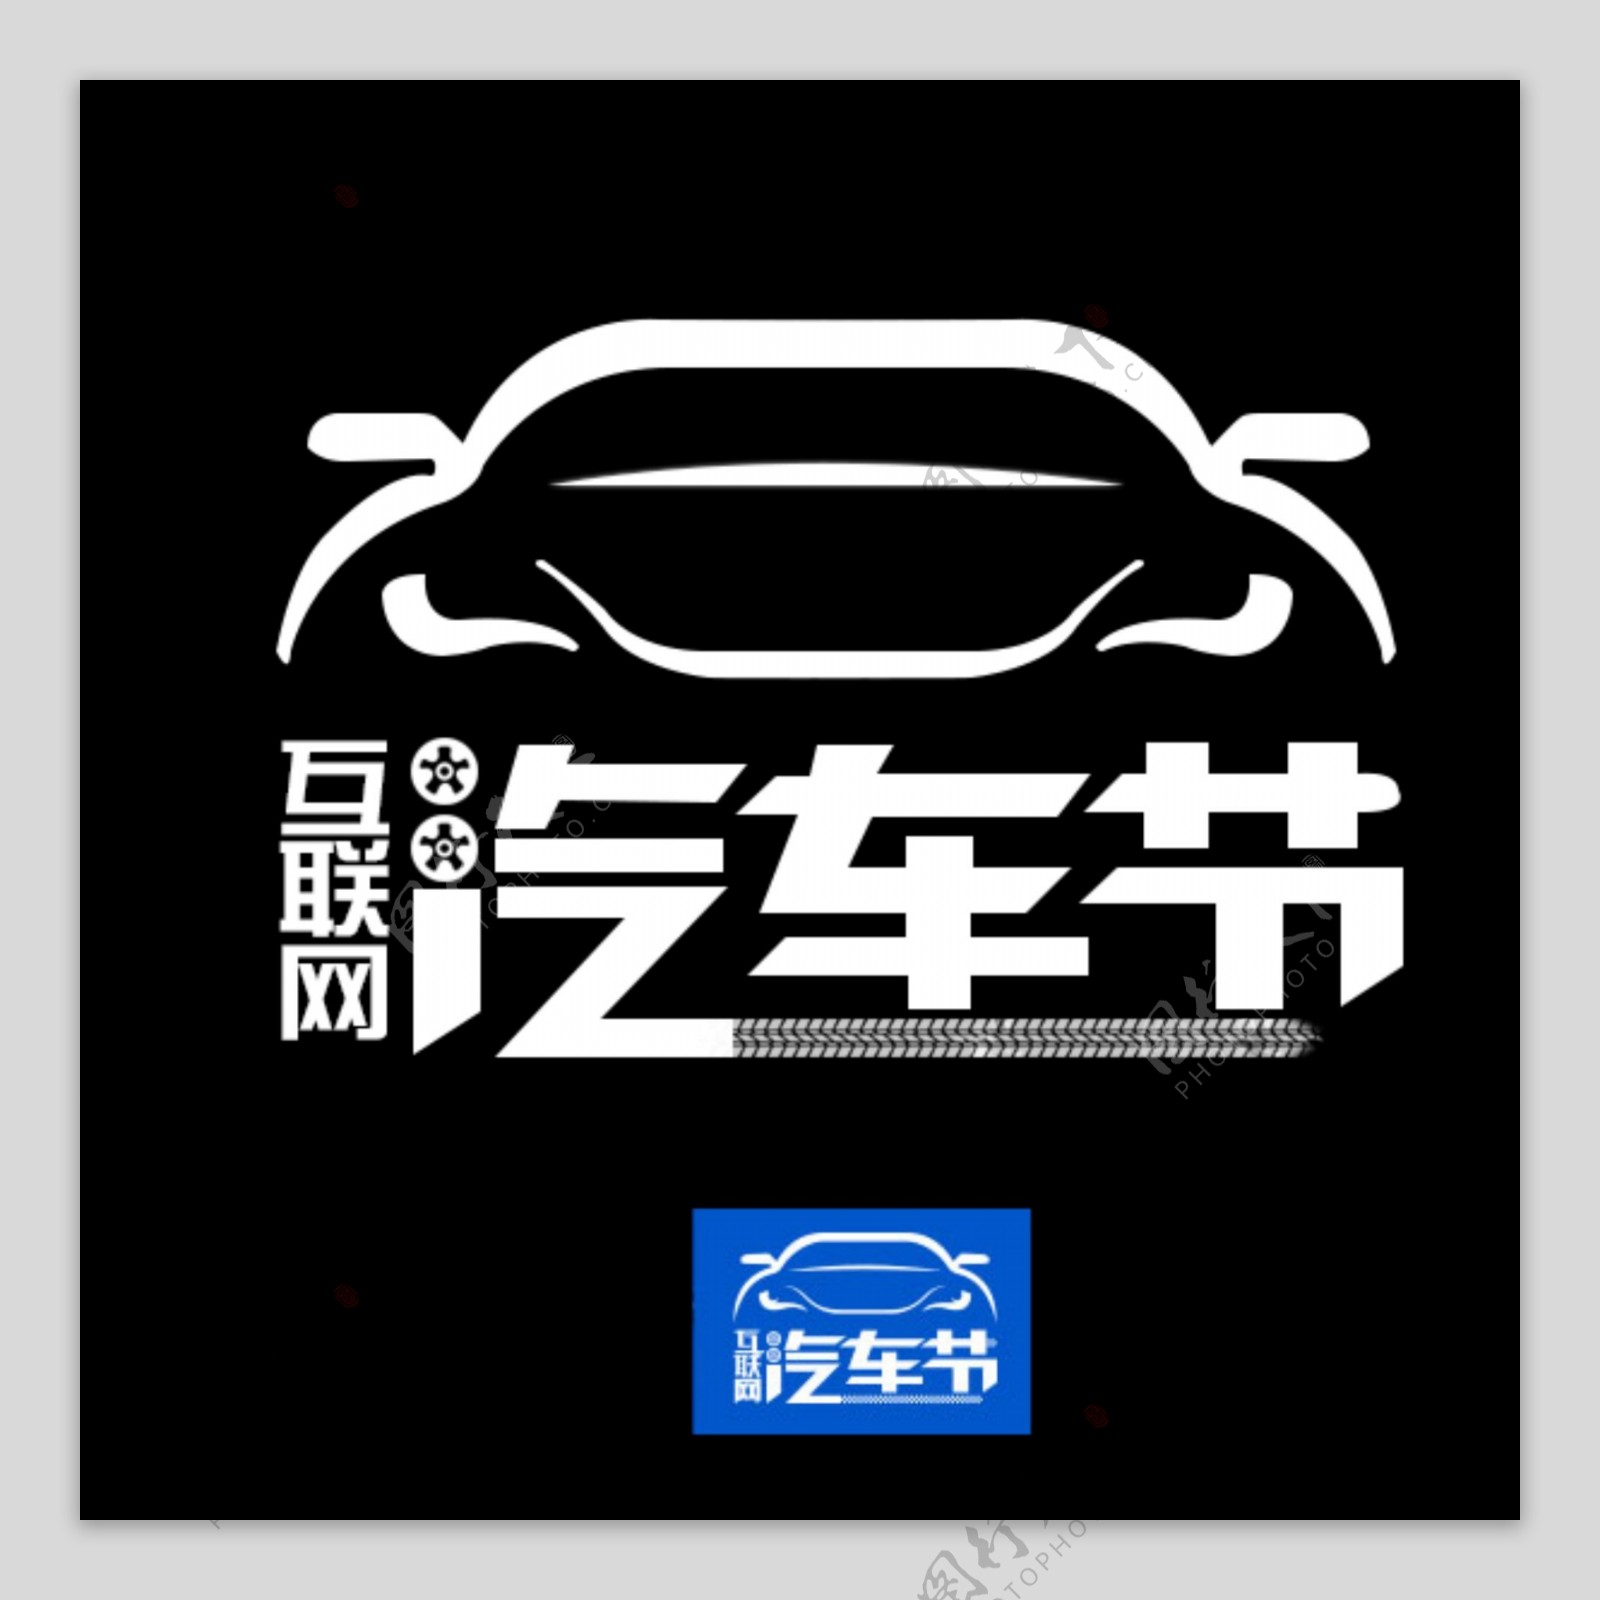 2016淘宝天猫汽车节logo标志